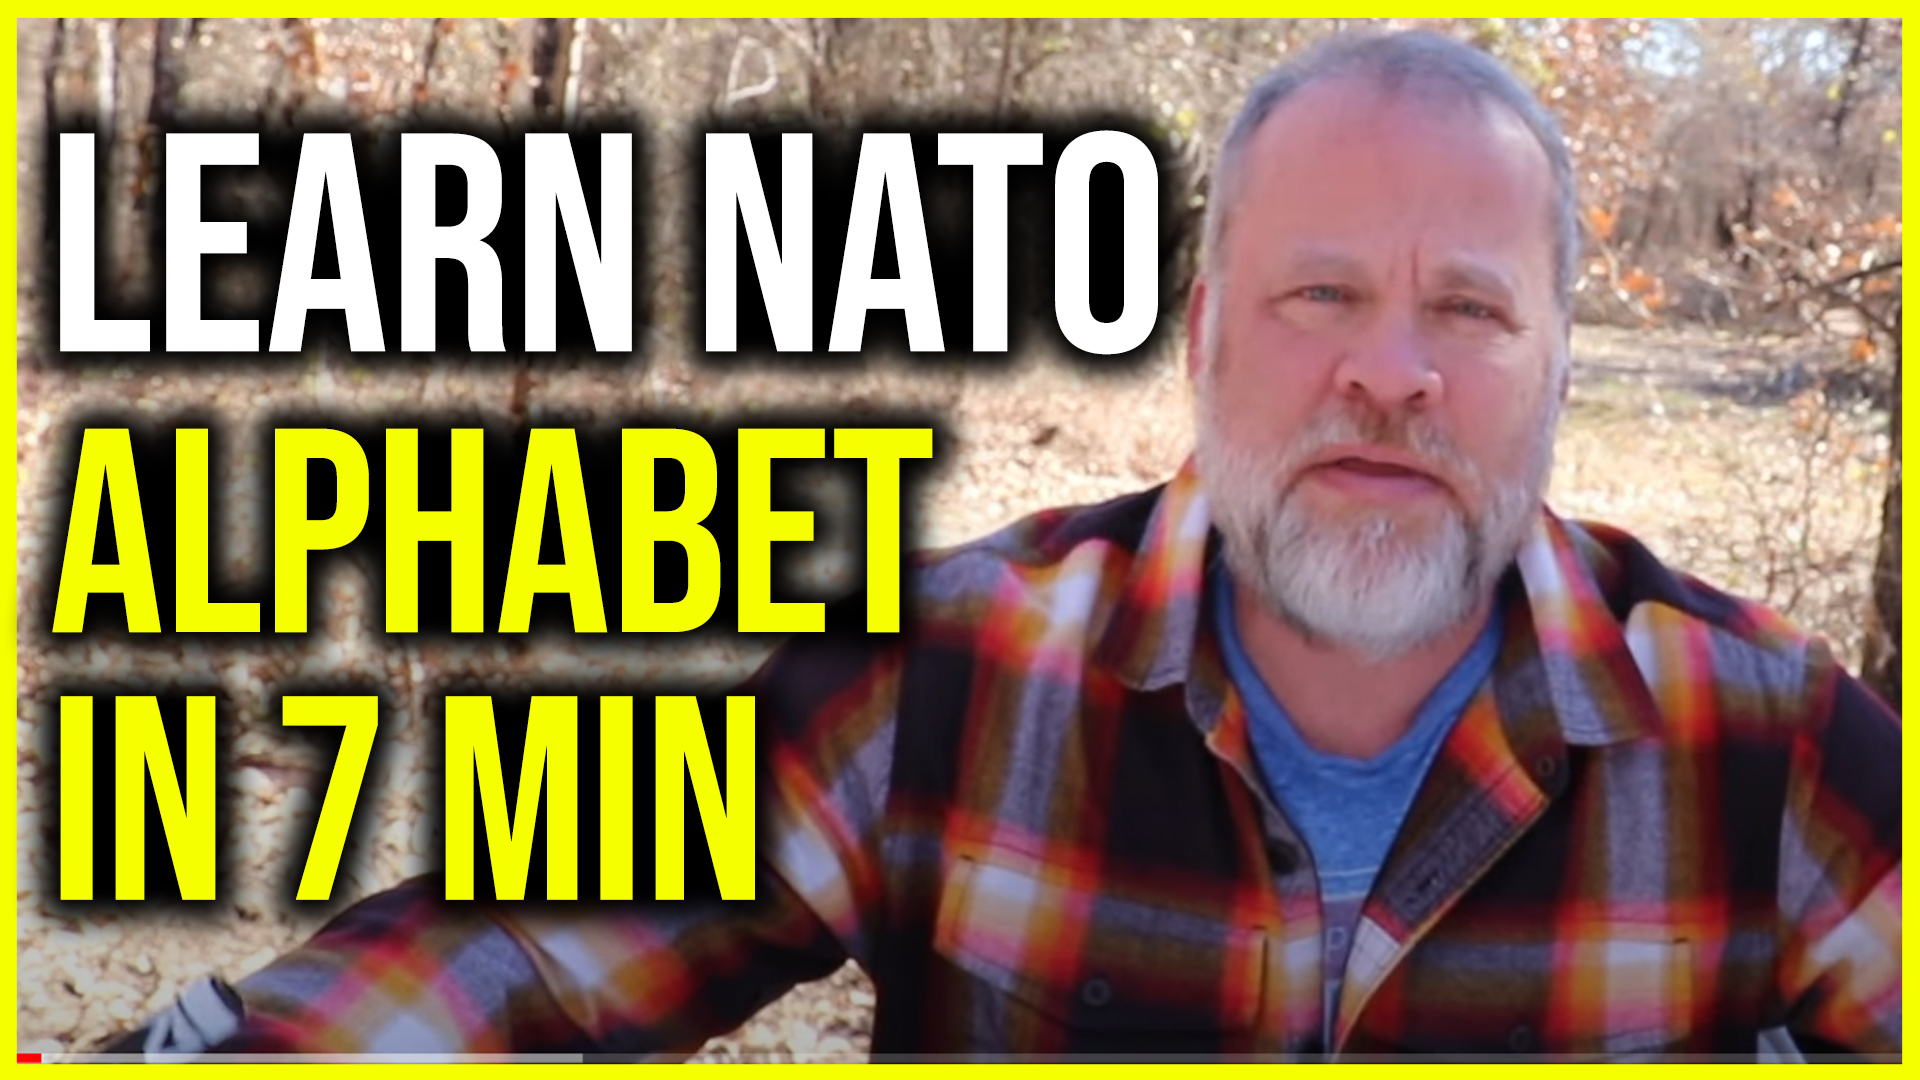 Memorize the NATO Alphabet